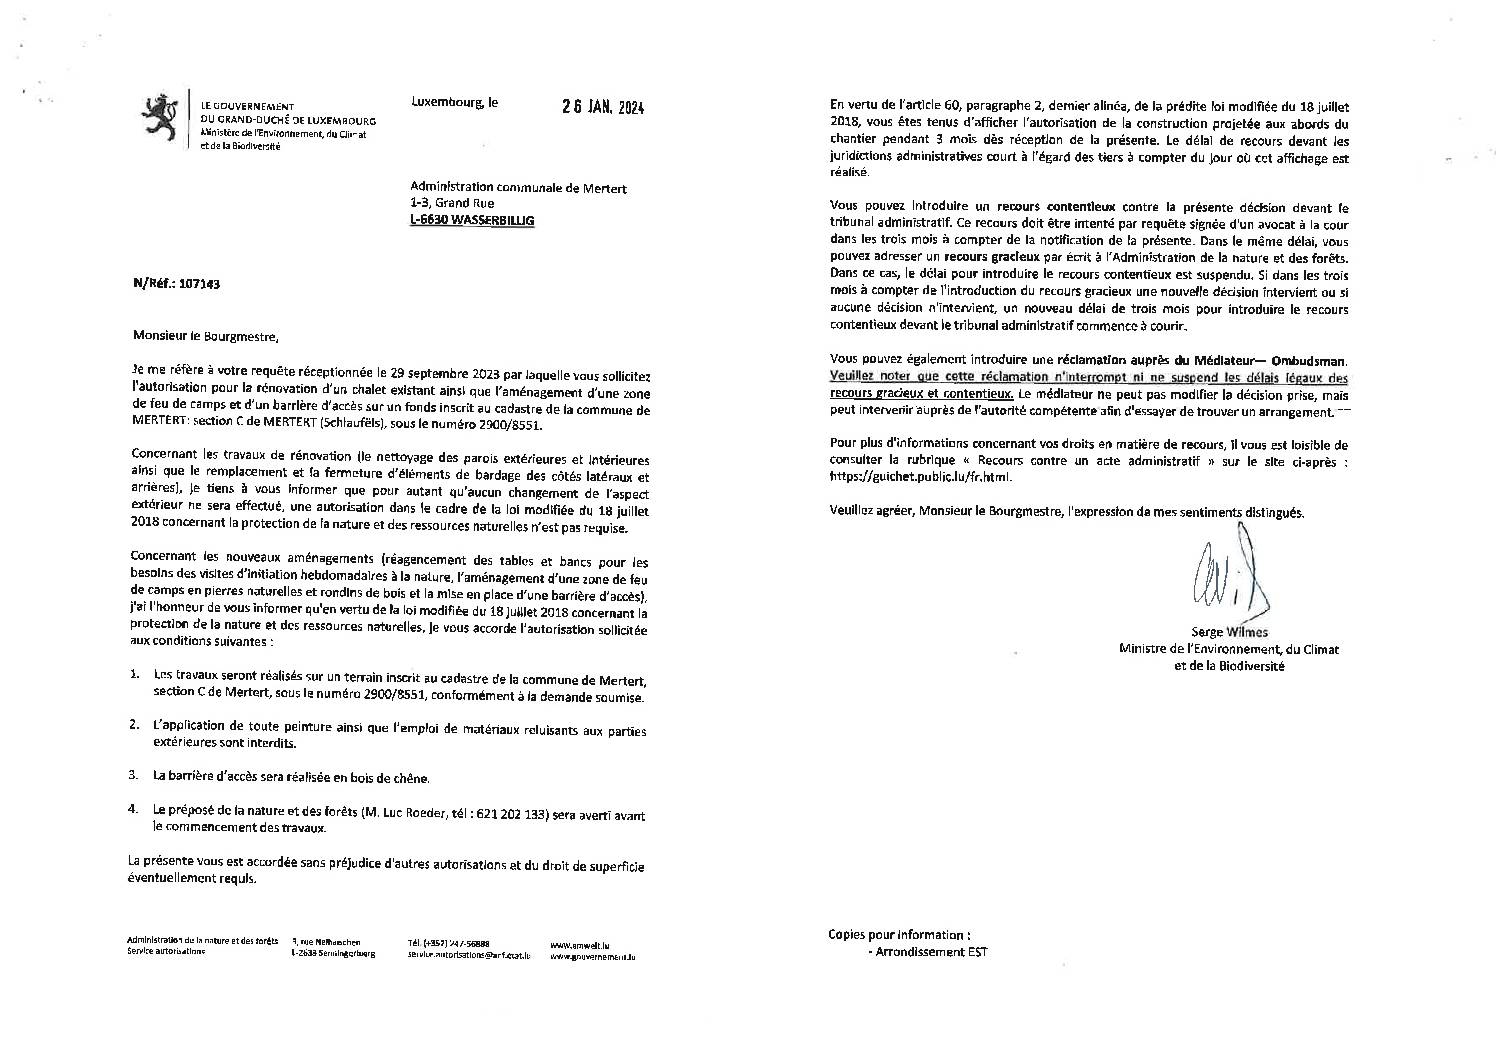 Autorisation pour la rénovation d'un chalet - section C de Mertert (Schlaufëls)